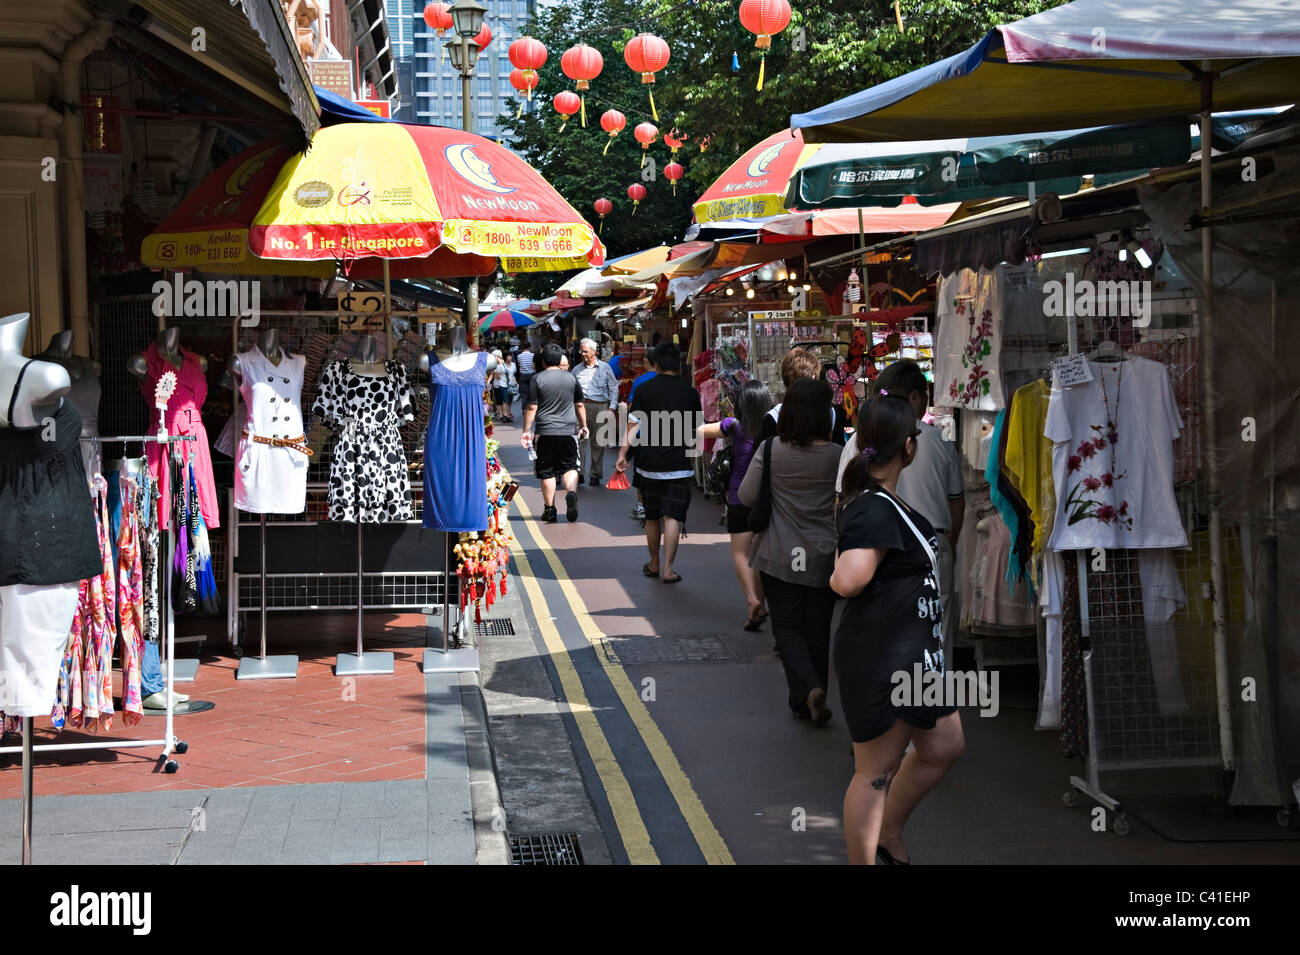 Les étals de marché en plein air animé de Chinatown Singapour République de Singapour Asie Banque D'Images